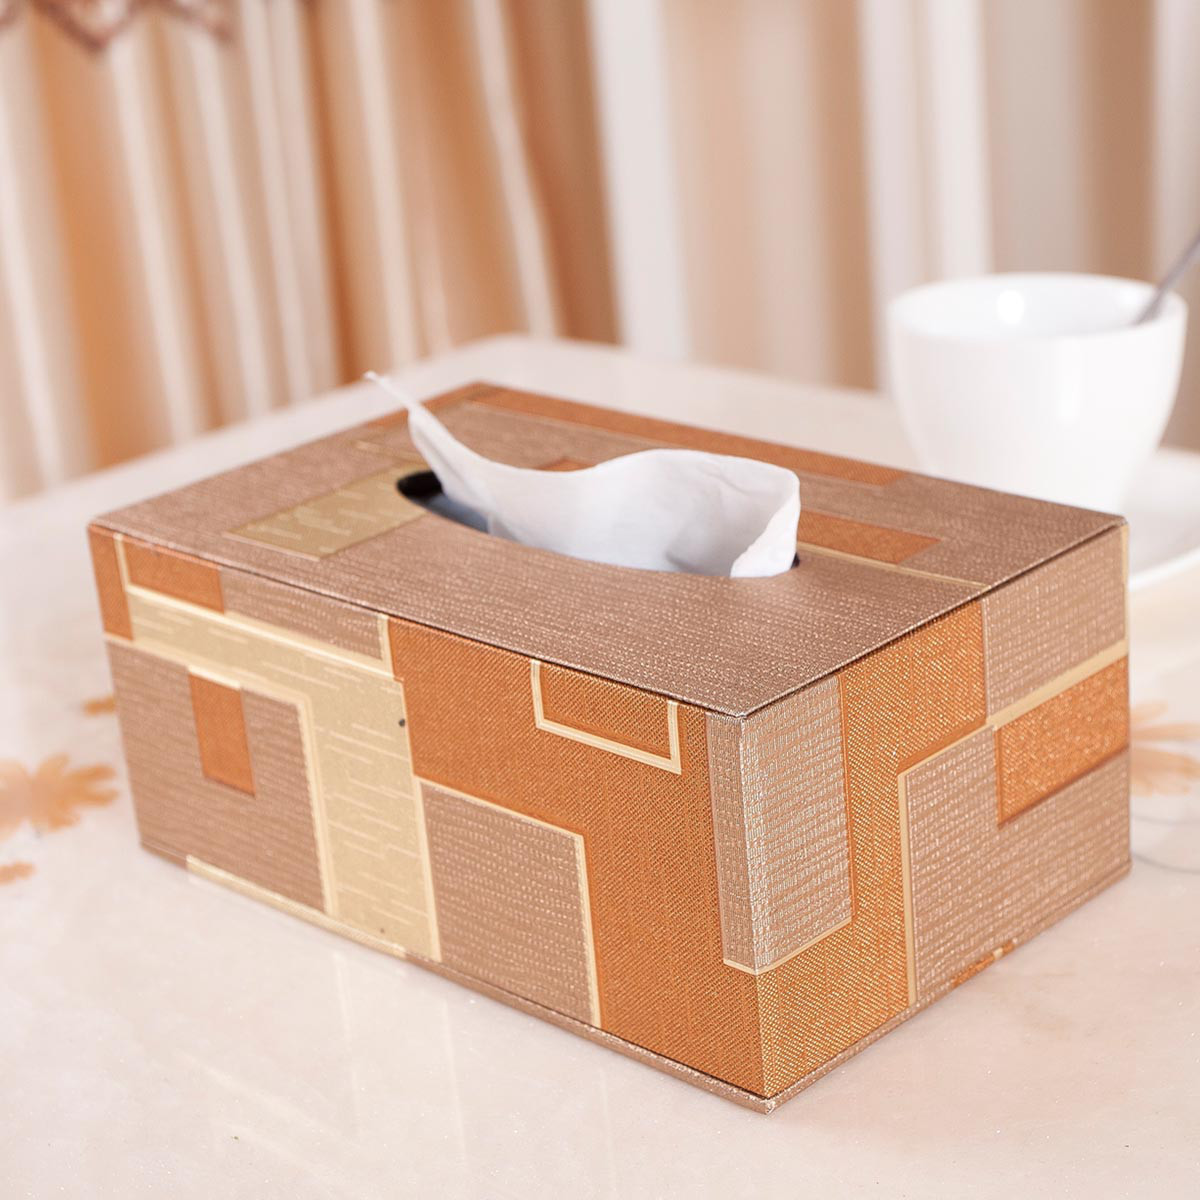 壁纸欧式木质抽纸盒纸巾盒家用客厅创意茶几收纳卷纸北欧简约可爱